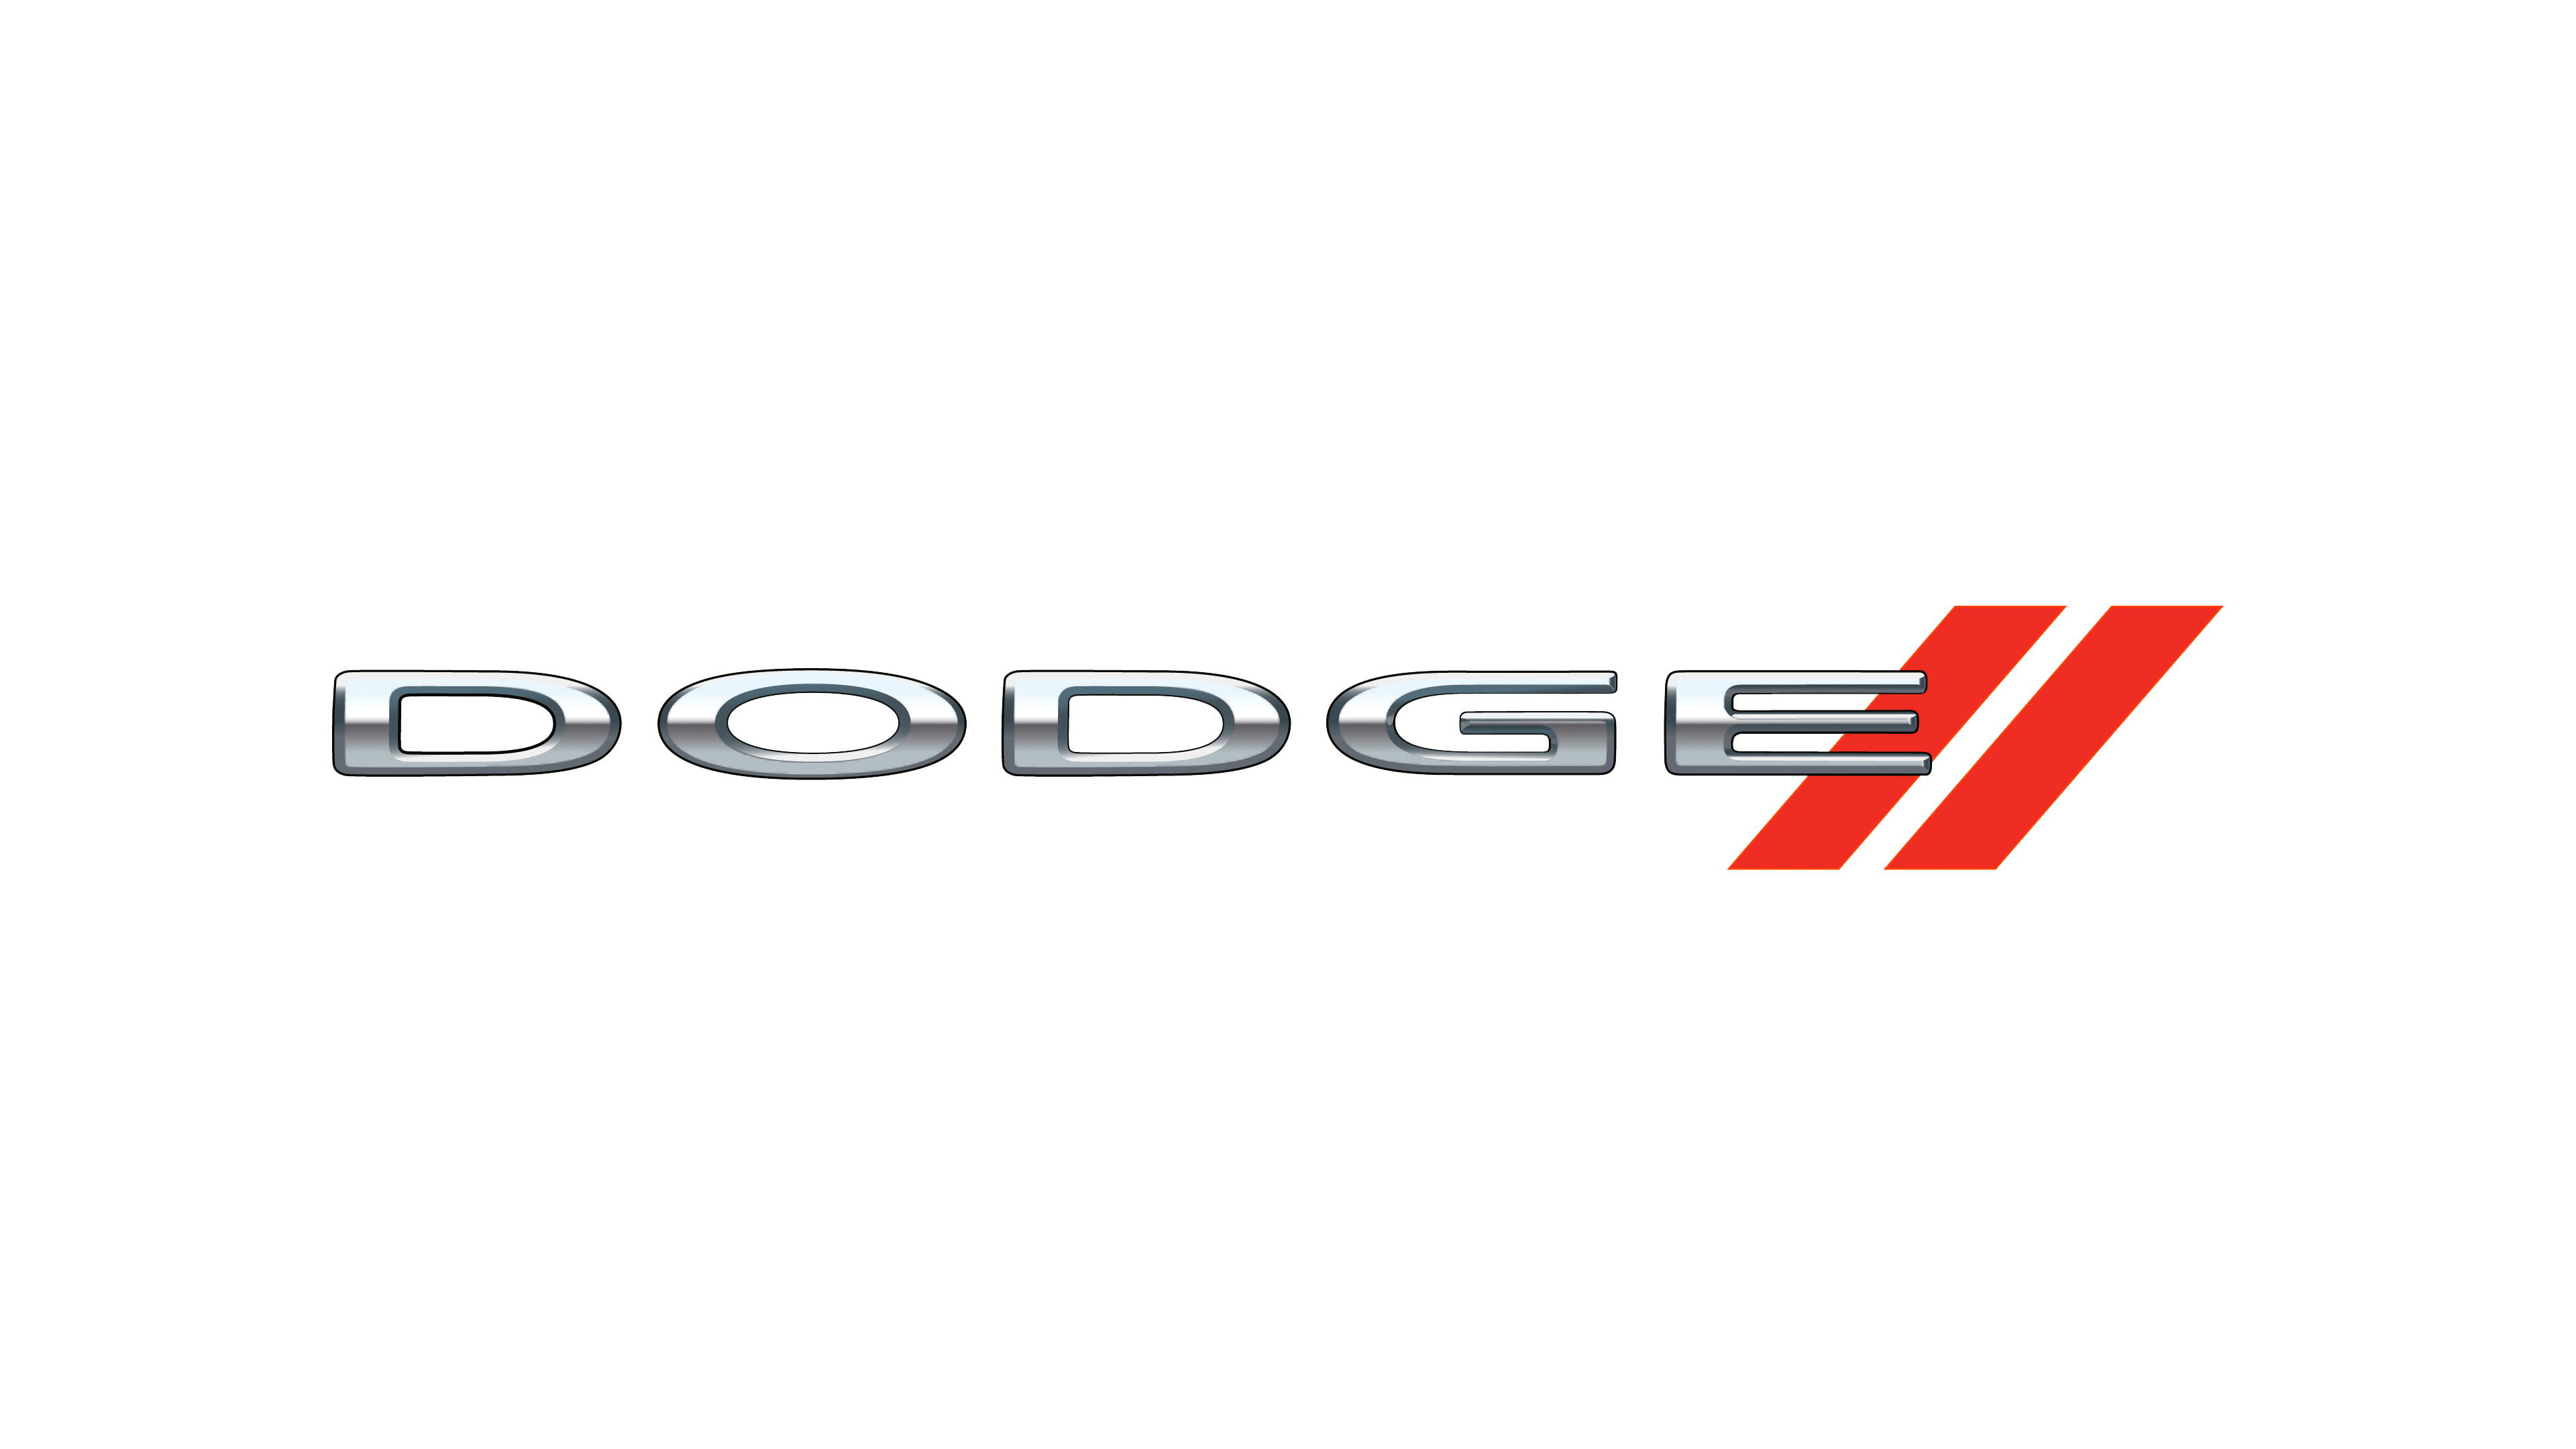 http://rpmautolease.com/wp-content/uploads/2017/08/Dodge-logo-2011-3840x2160.png